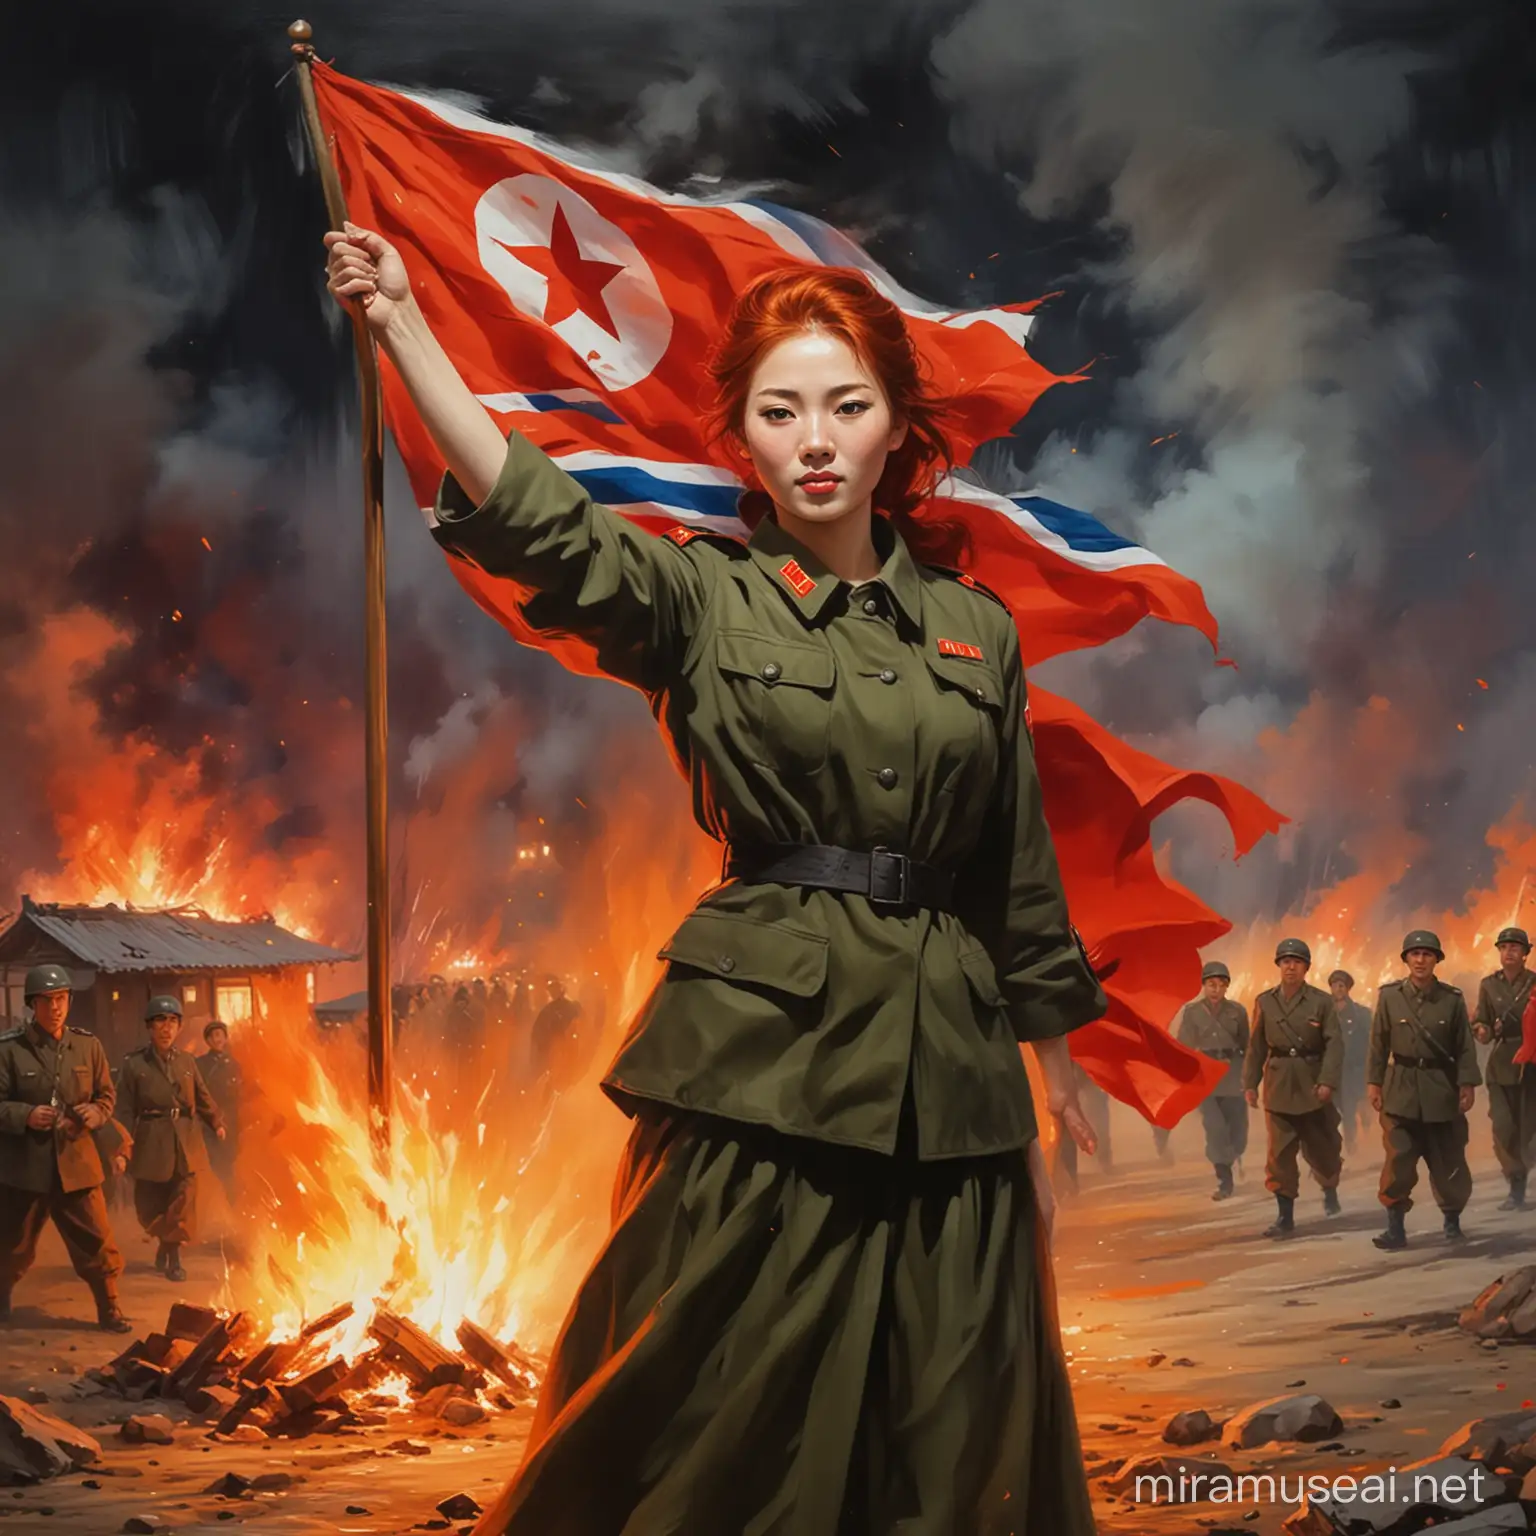 Peinture impressionniste femme rousse en tenue de soldats nord coréen , agitant un drapeau rouge, un village en flamme la nuit